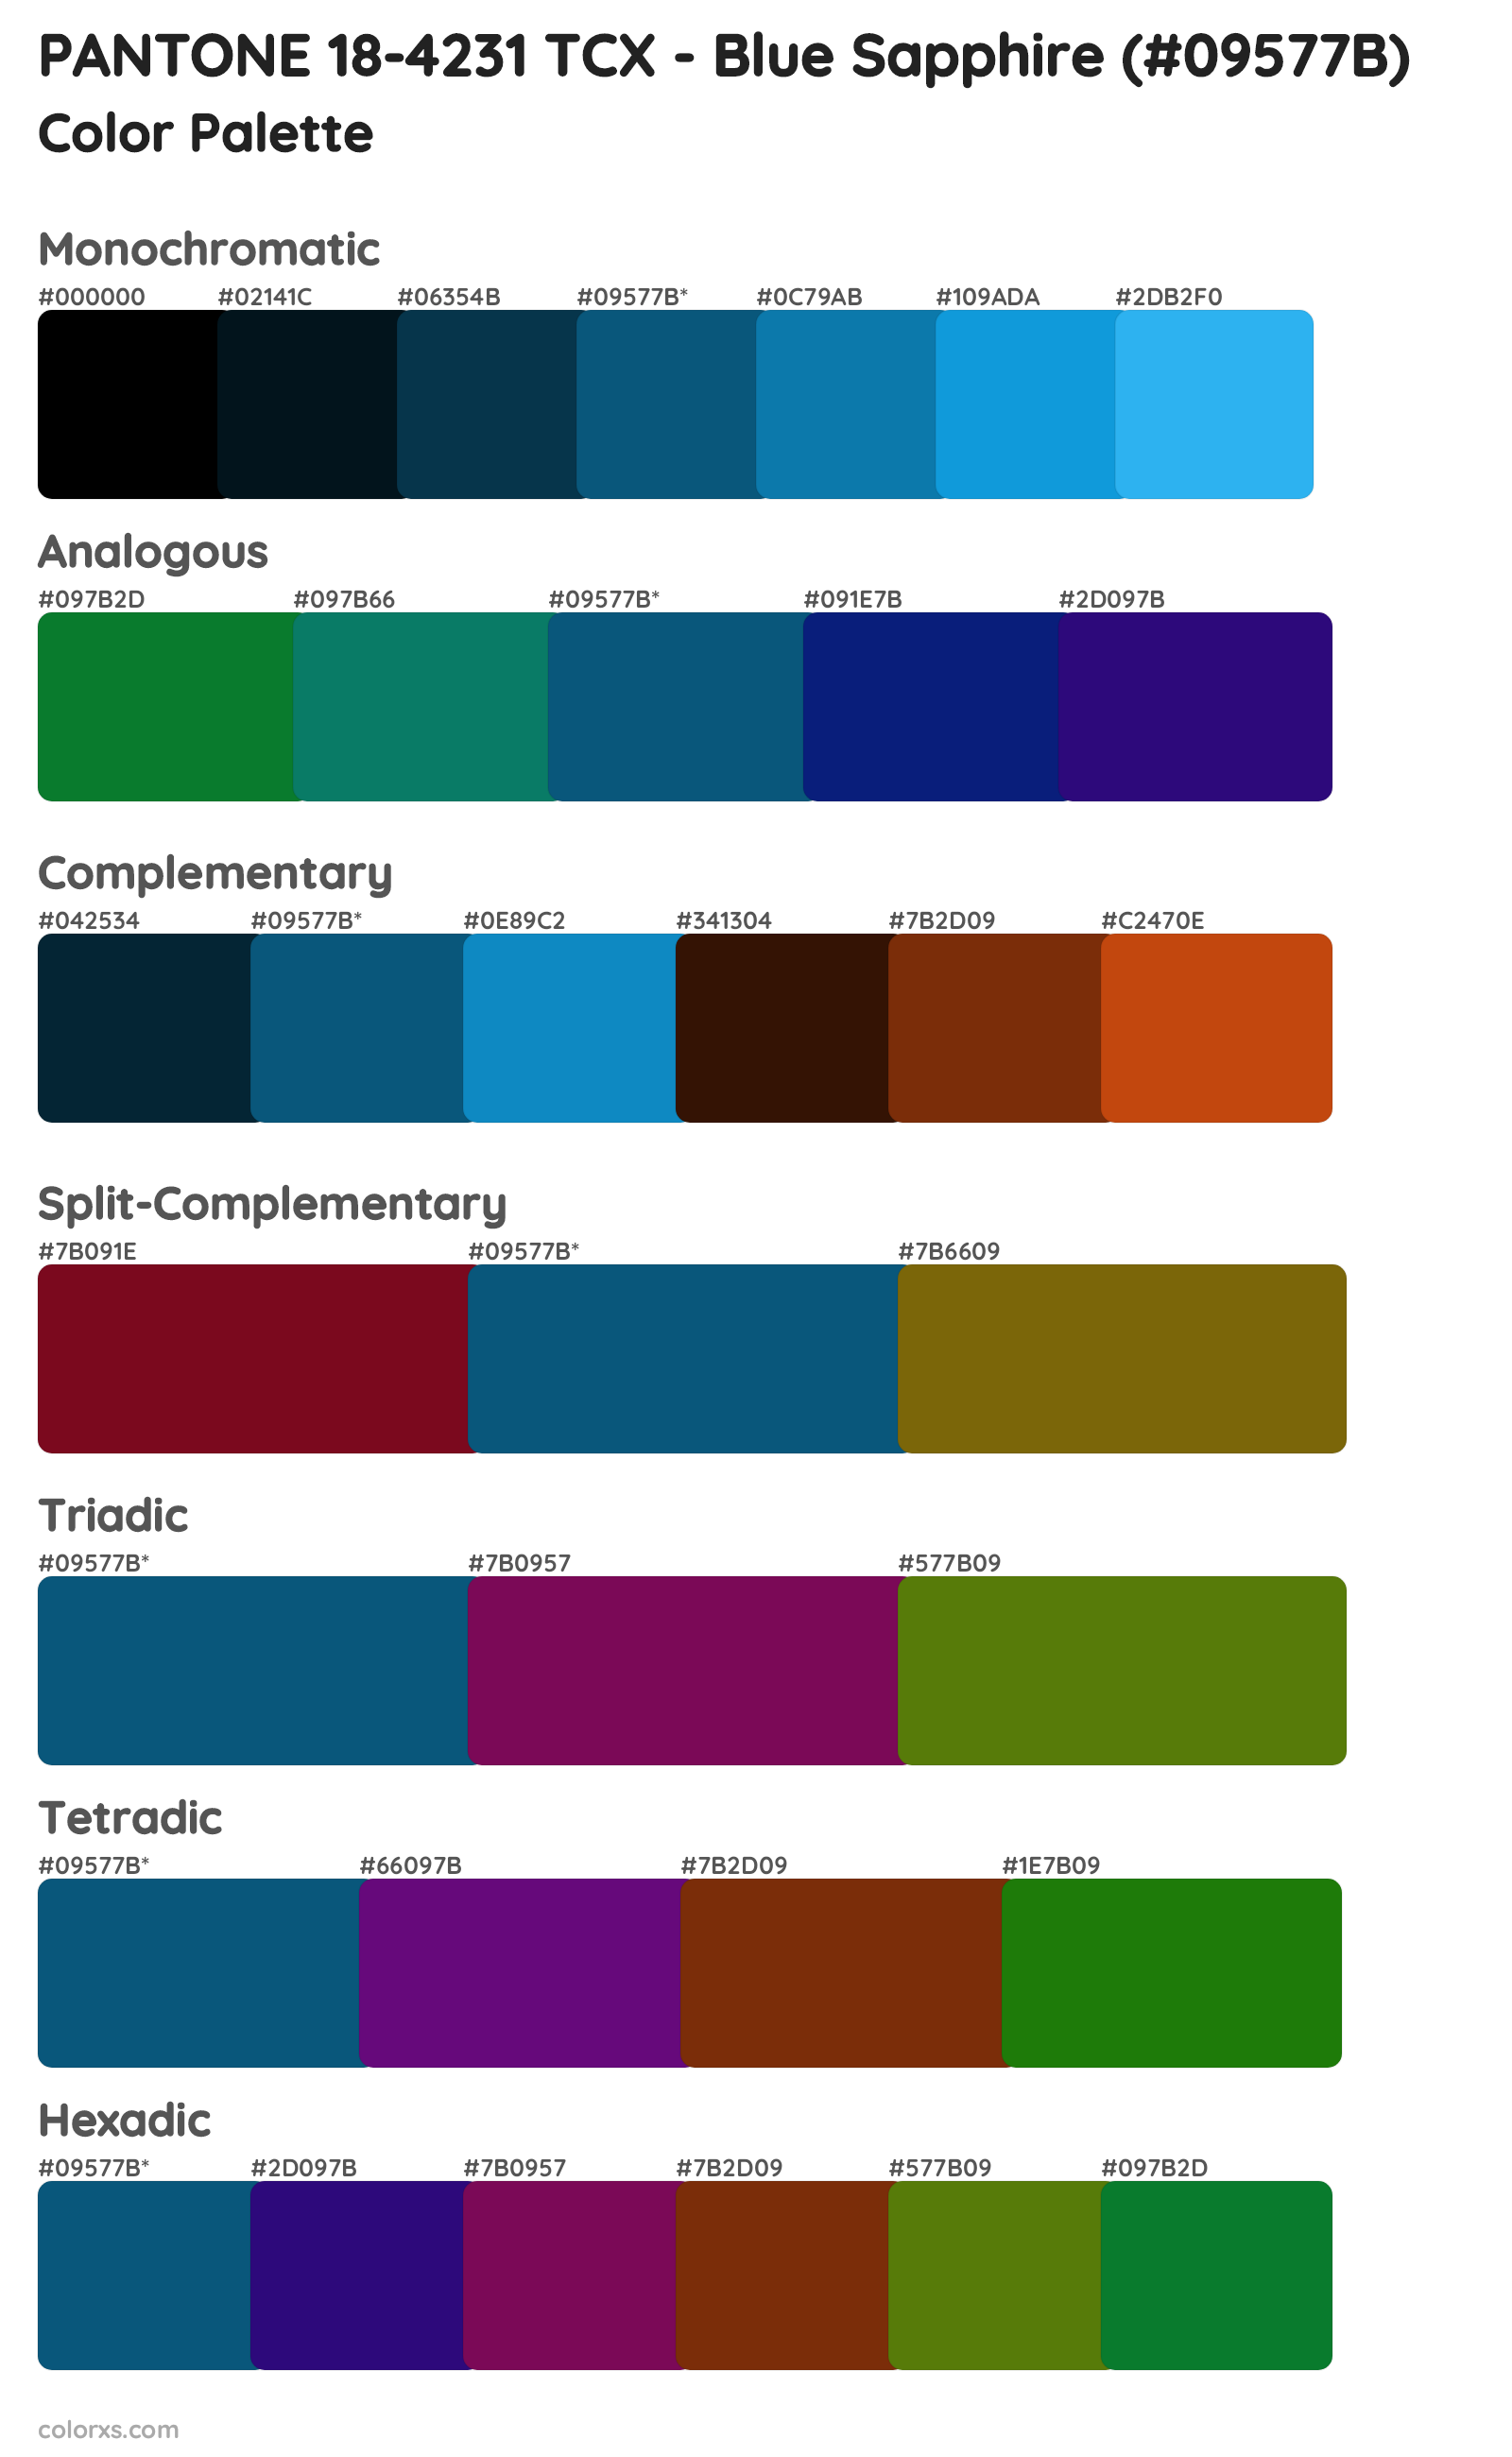 PANTONE 18-4231 TCX - Blue Sapphire Color Scheme Palettes